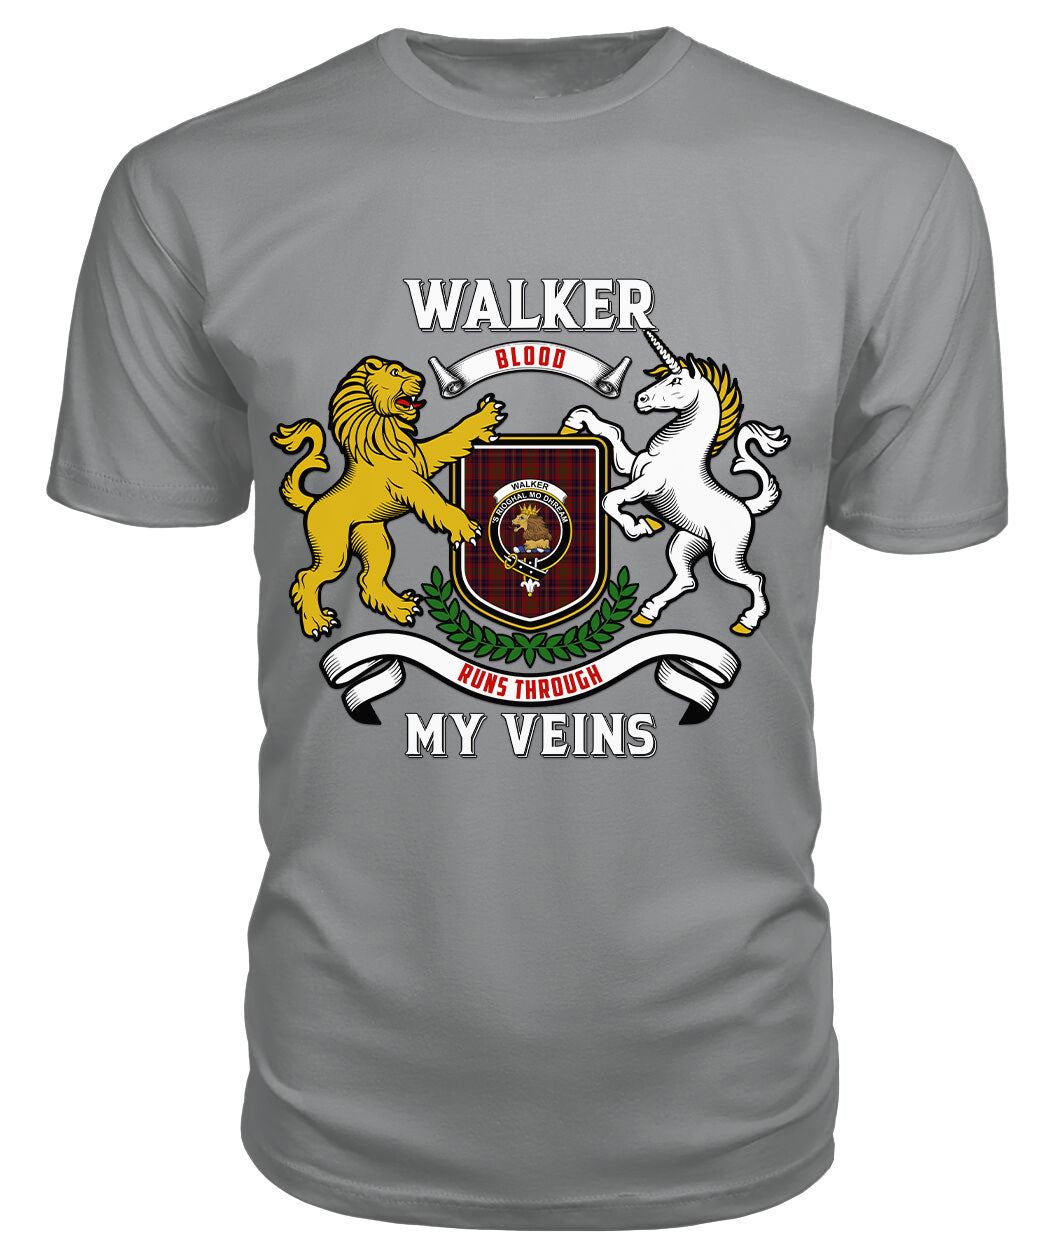 Walker Tartan Crest 2D T-shirt - Blood Runs Through My Veins Style